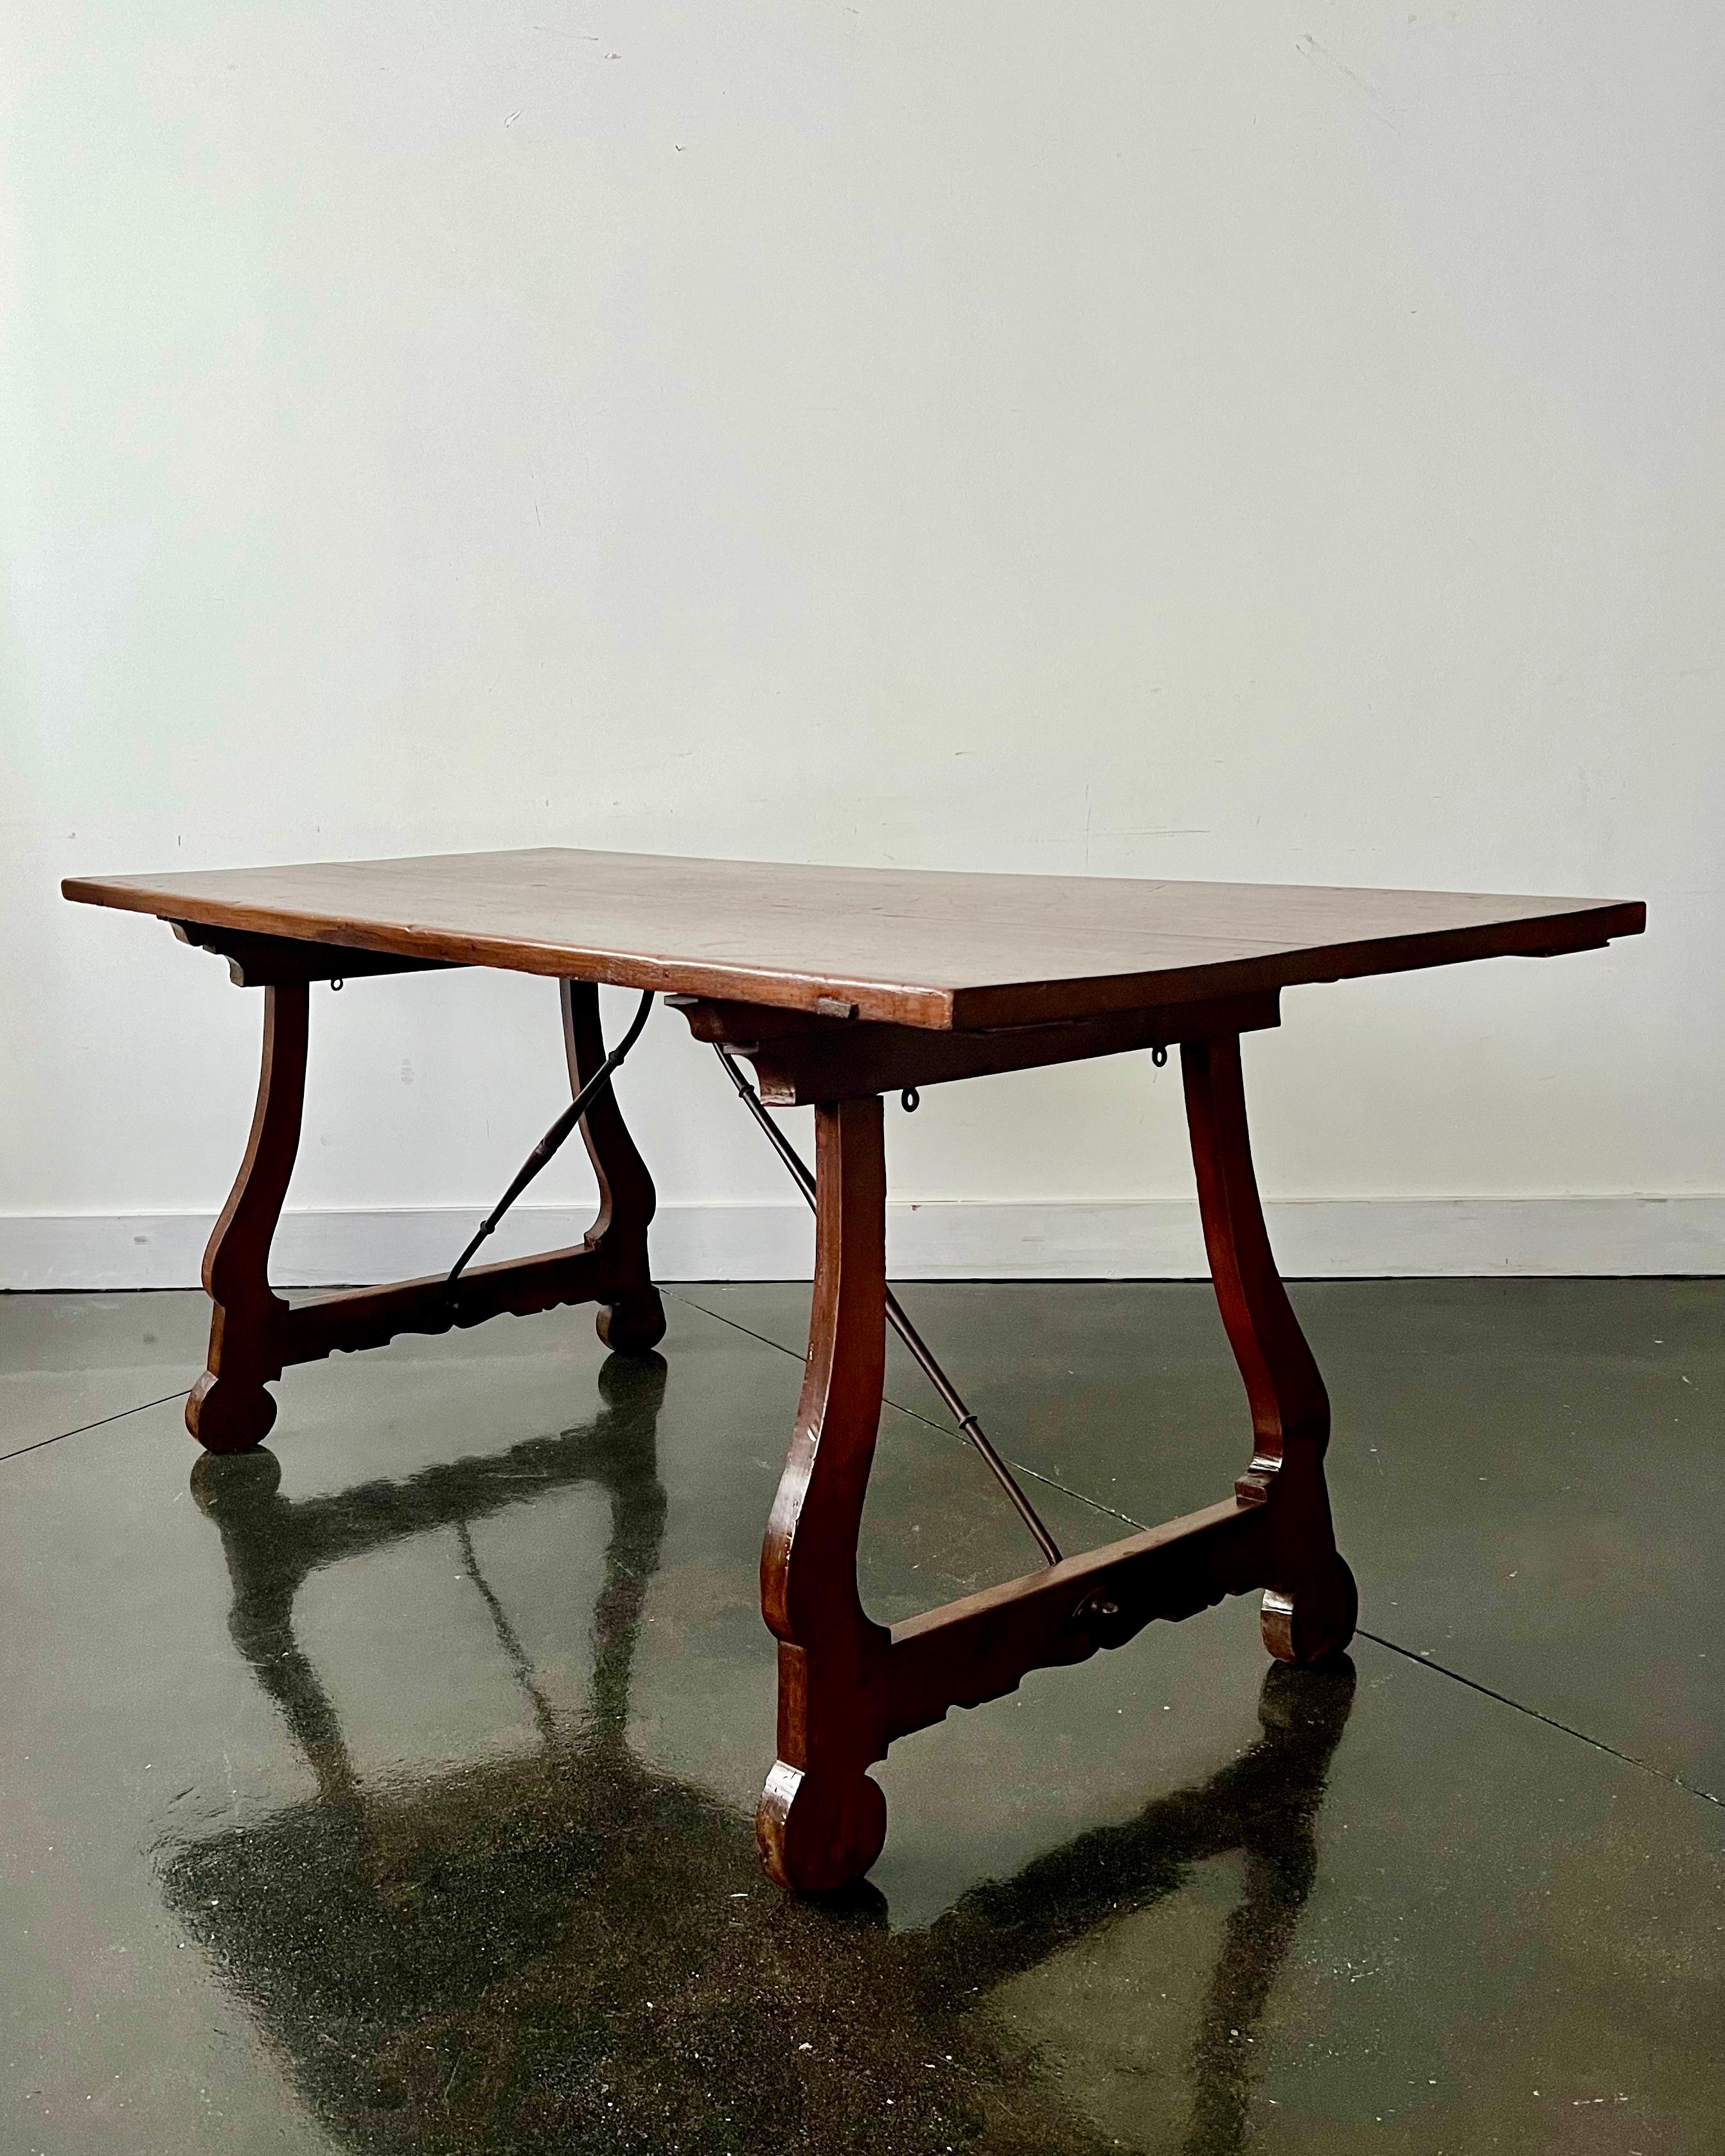 Italienischer Bocktisch/Konsole/Mitteltisch aus Nussbaum aus dem 18. Jahrhundert mit verschnörkelten, geschnitzten Stützen, die durch eine schmiedeeiserne Bahre verbunden sind, und einer rechteckigen Platte aus massivem Nussbaum.